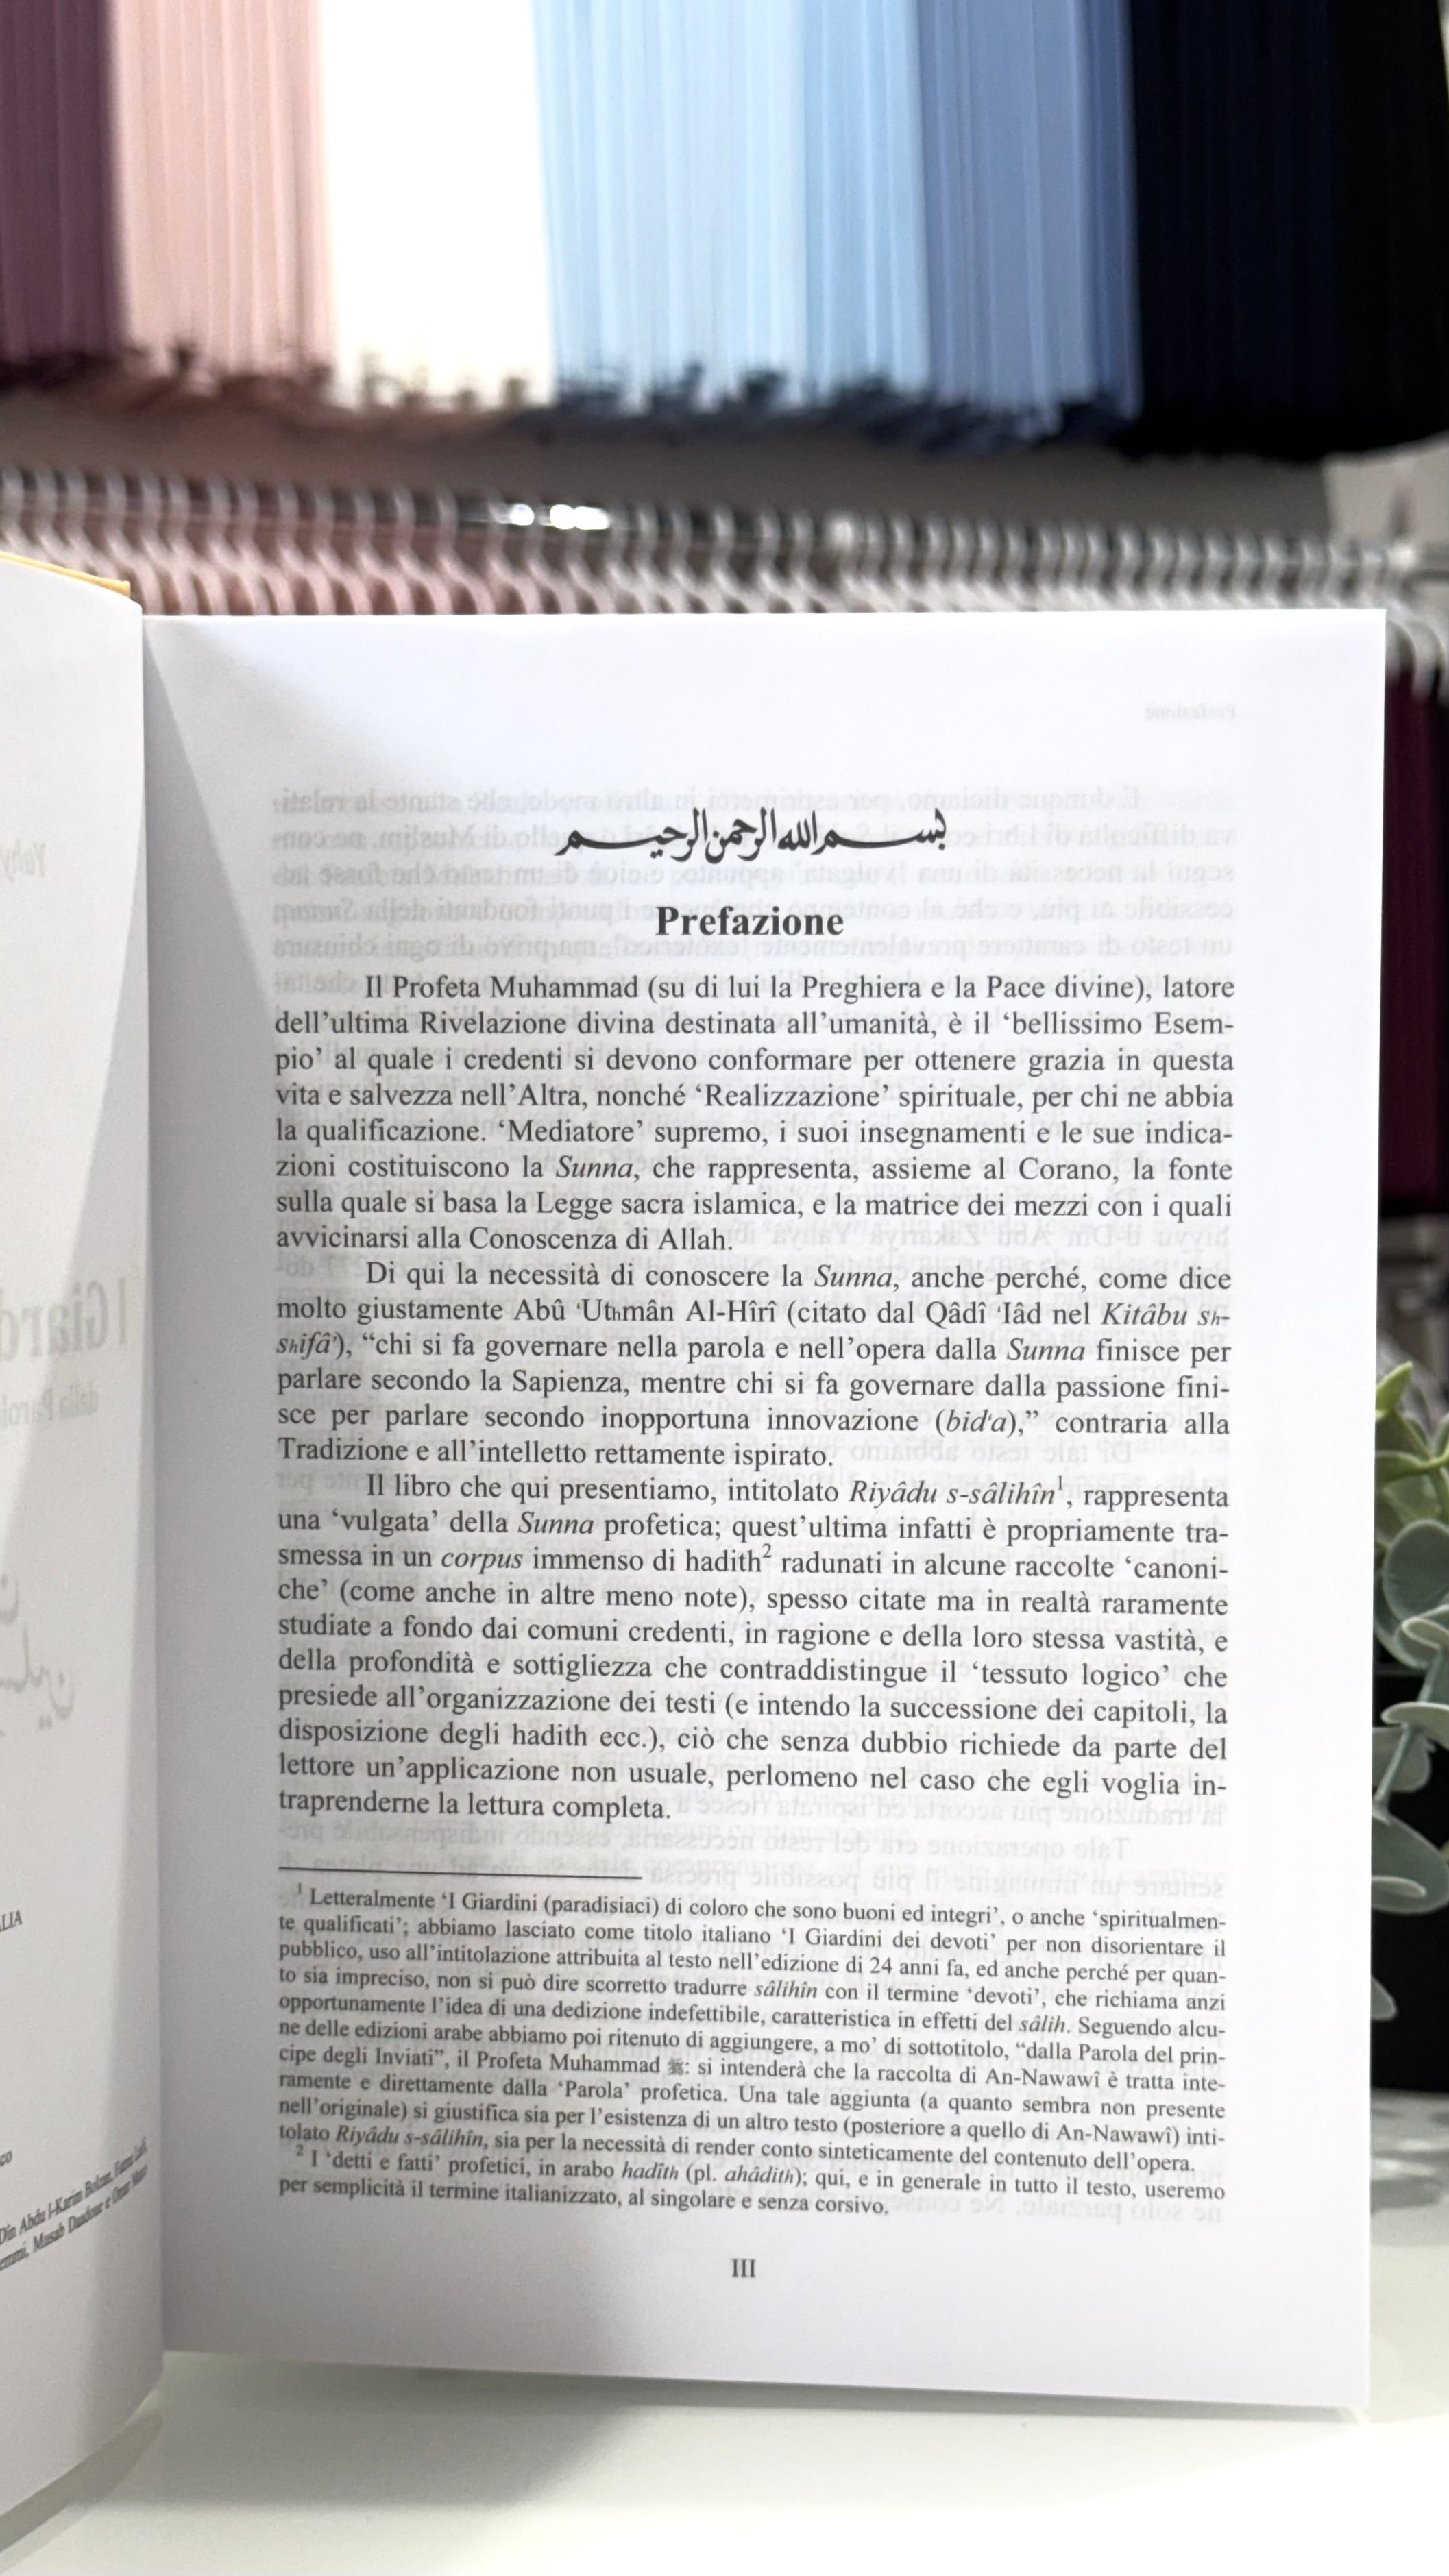 I Giardini dei Devoti - Ar Riyâdu s-sâlihîn - Hijab Paradise  - prefazione - traduzione italiana degli hadit - detti profeta Maometto - detti mohamed sws - hadit